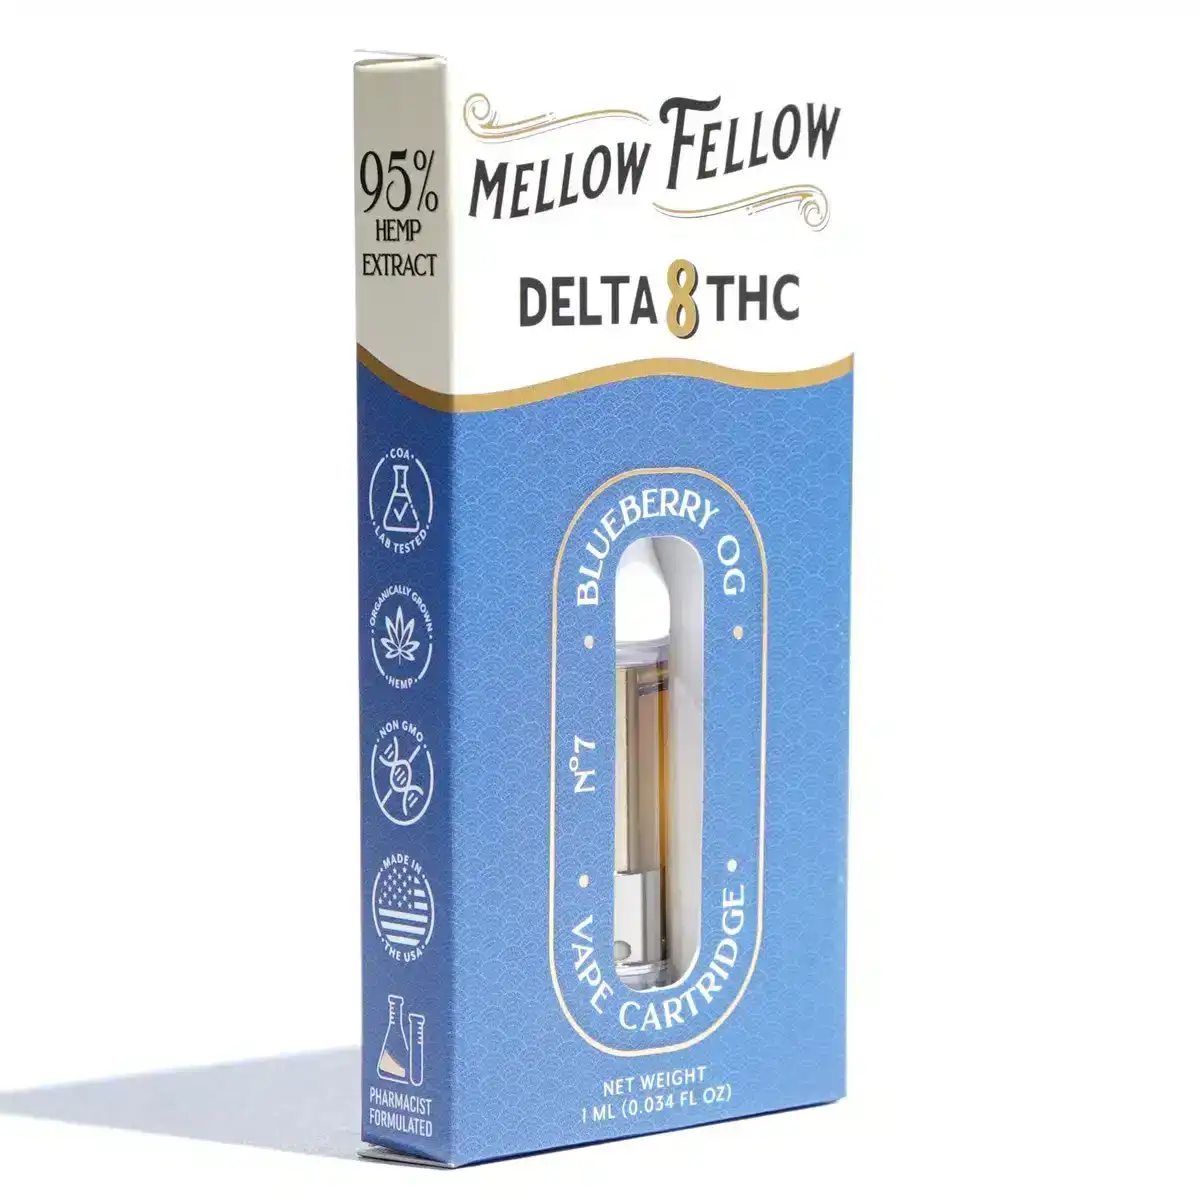 Image of Mellow Fellow Delta 8 Vape Cartridges 1g